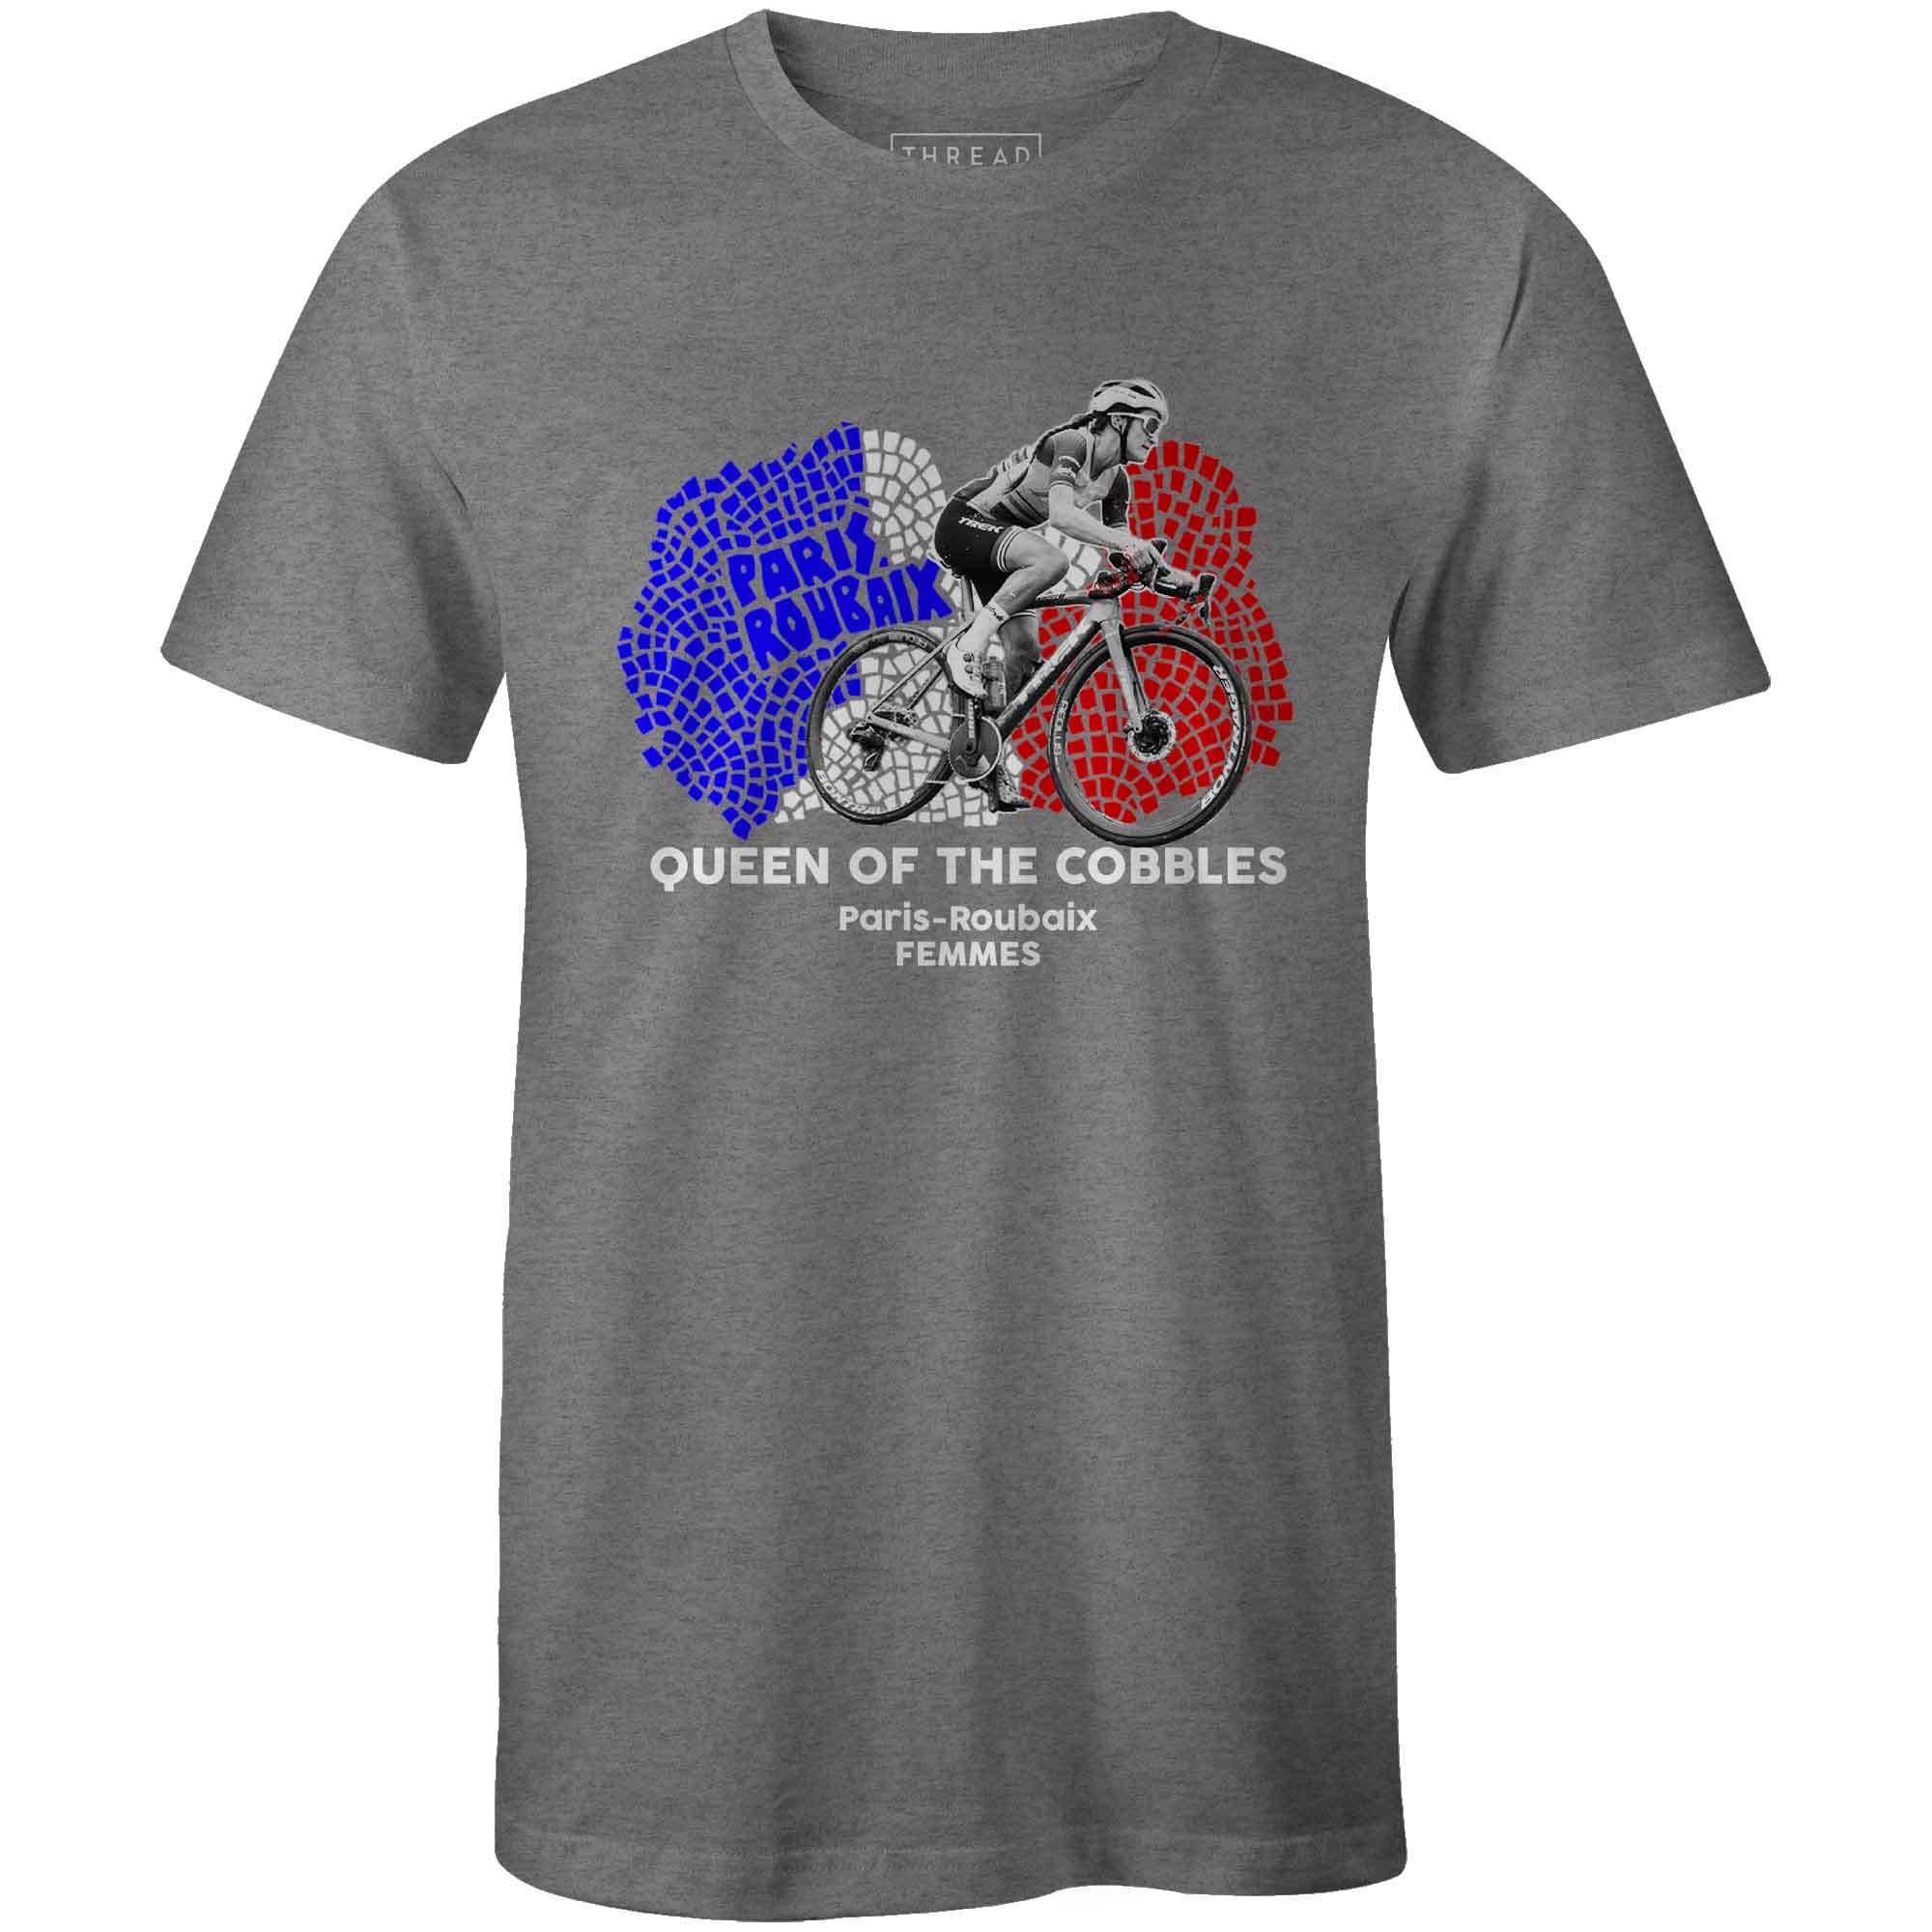 Men's T-shirt - Queen of The North